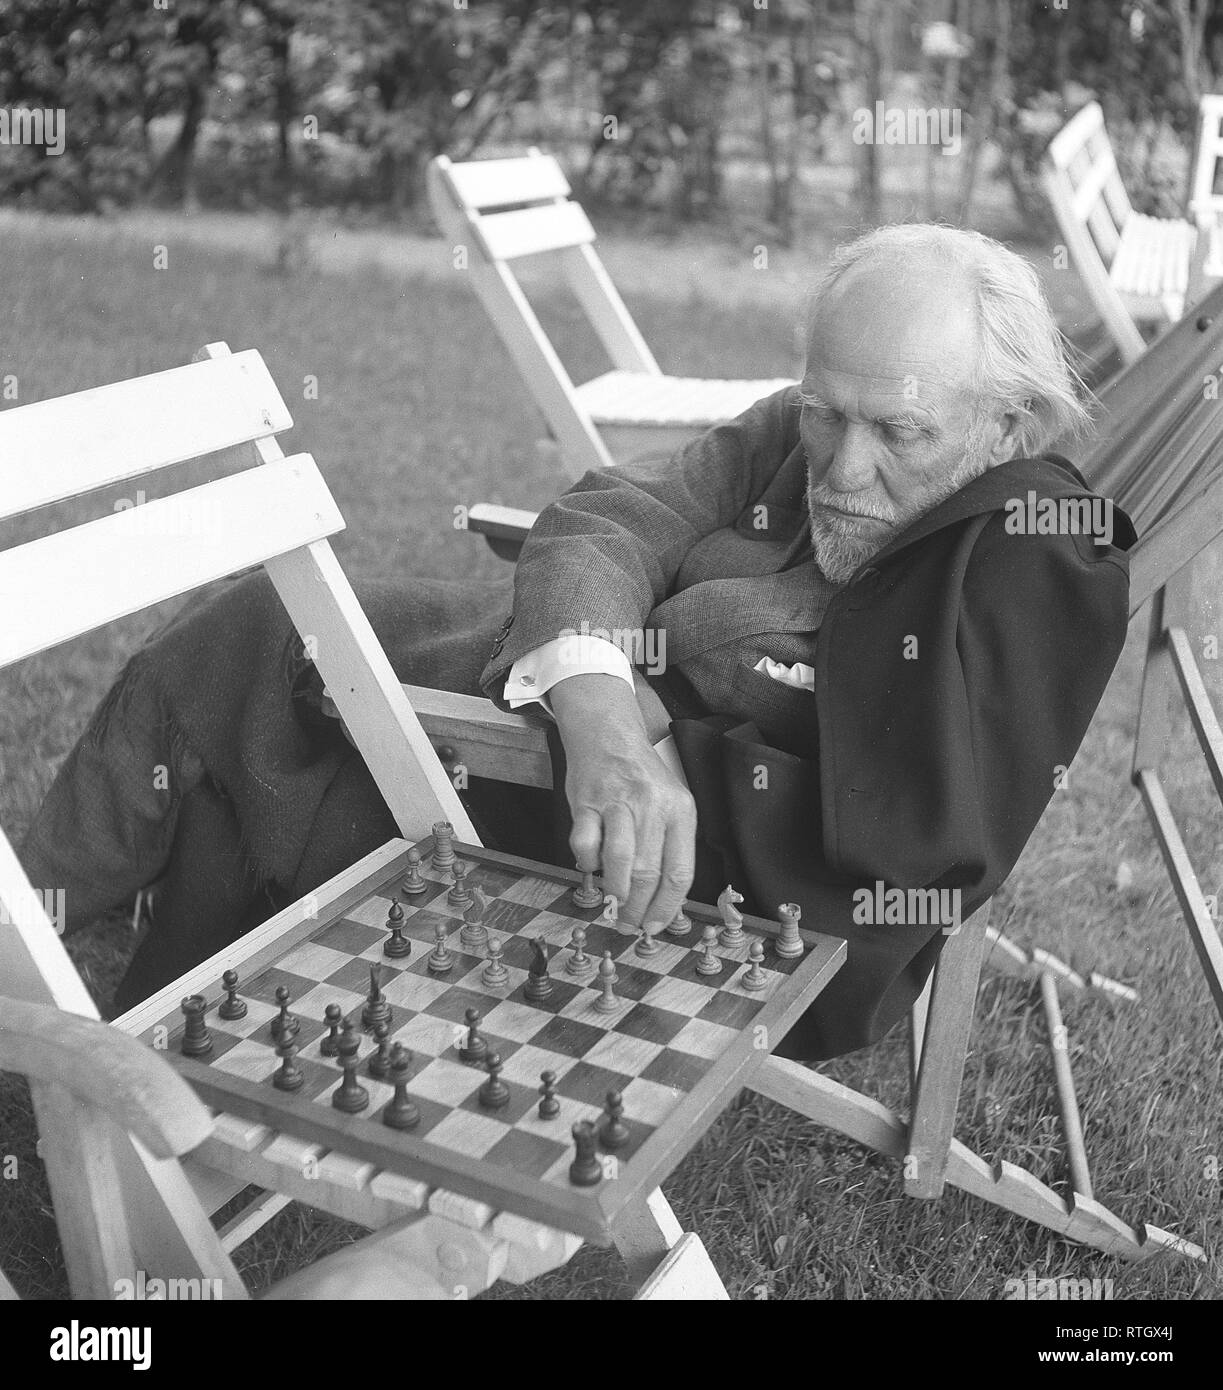 Schachspieler in den 1950er Jahren. Ein älterer Mann in einem gemütlichen Garten Stuhl ist Schach spielen mit jemand, und macht eine Bewegung auf dem Schachbrett. Foto Kristoffersson Ref 21-9. Schweden 1952 Stockfoto